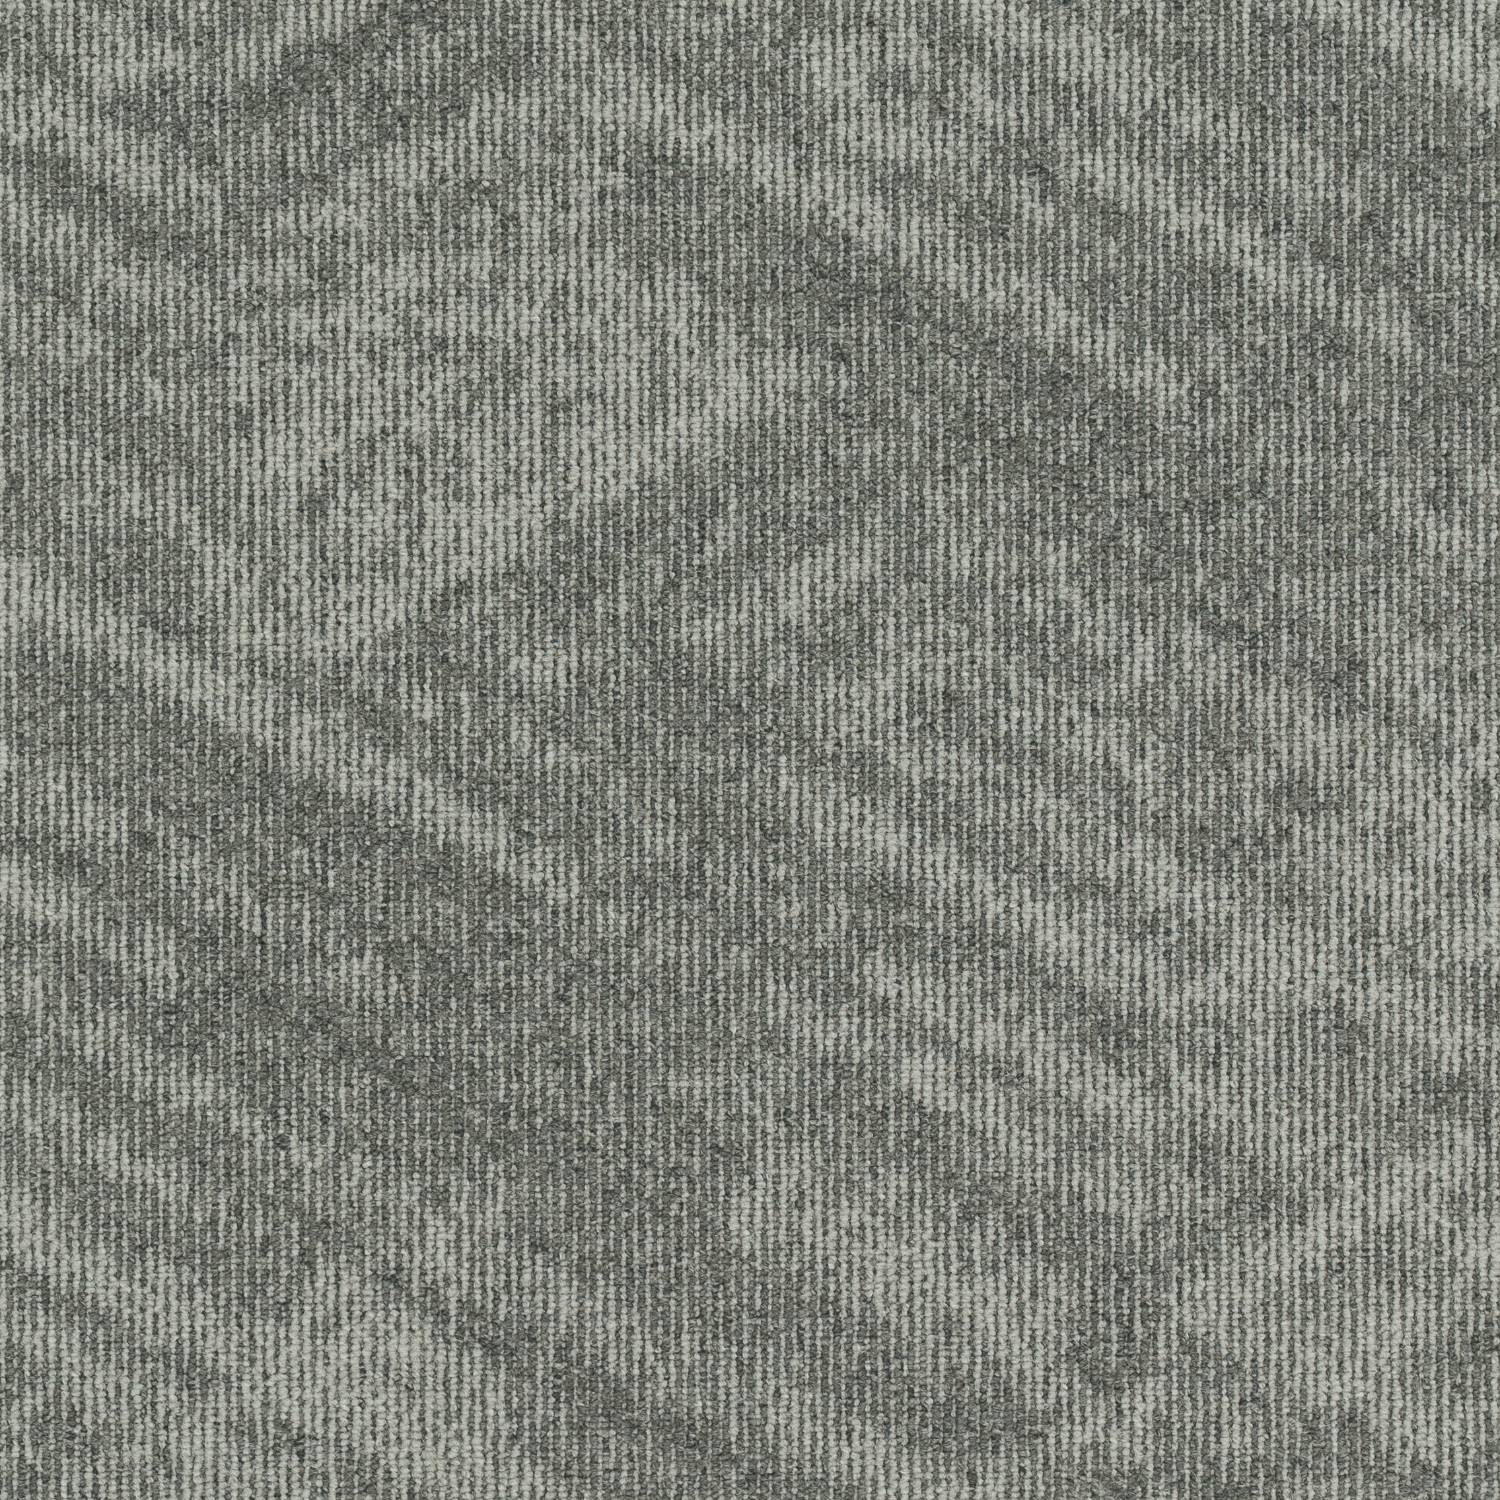 Contour View - Pile Carpet Tiles